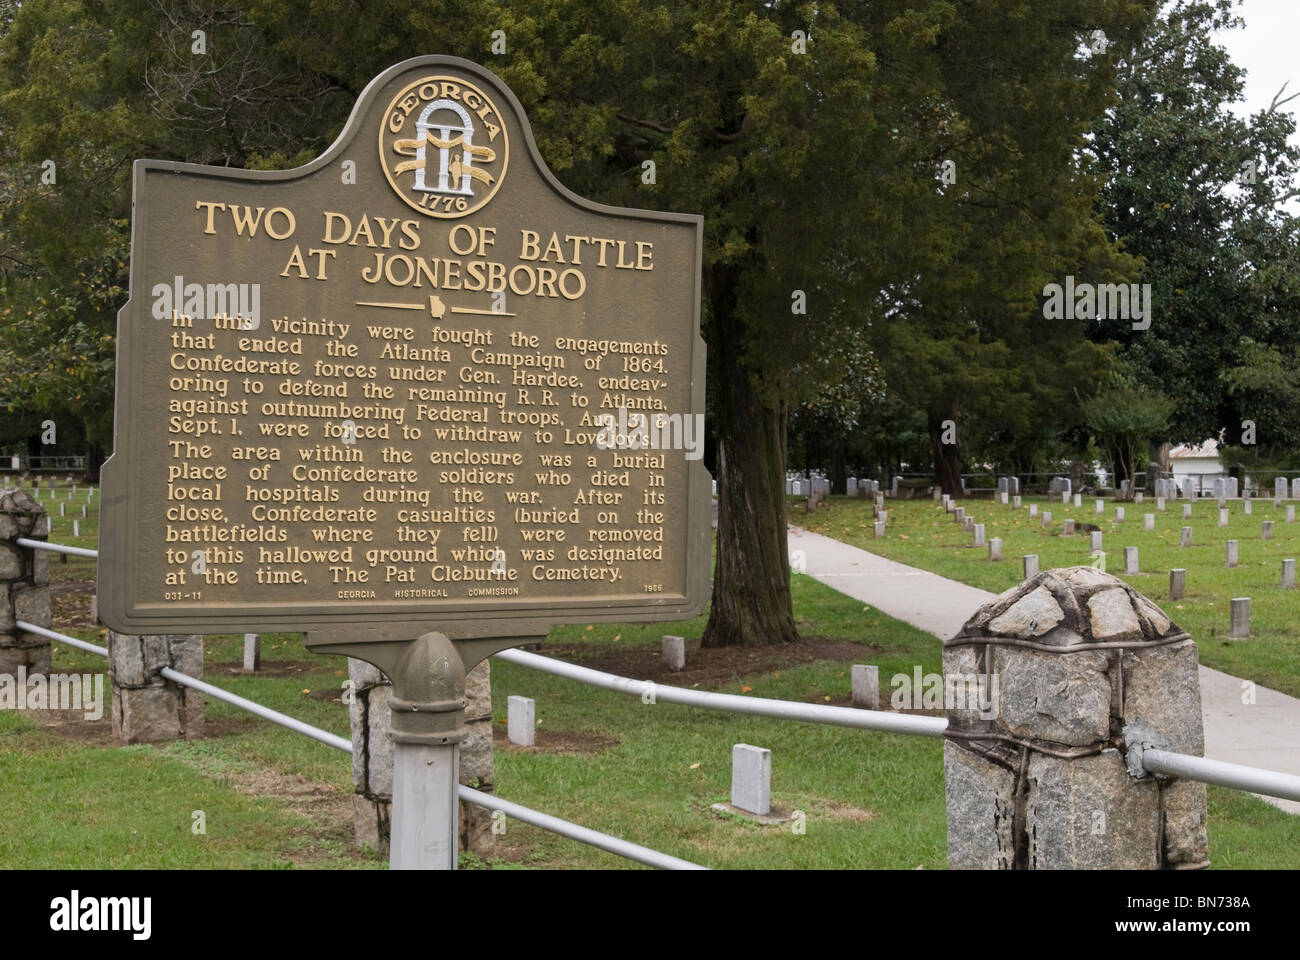 Historical marker at the Confederate Memorial Cemetery in Jonesboro, Georgia, USA Stock Photo